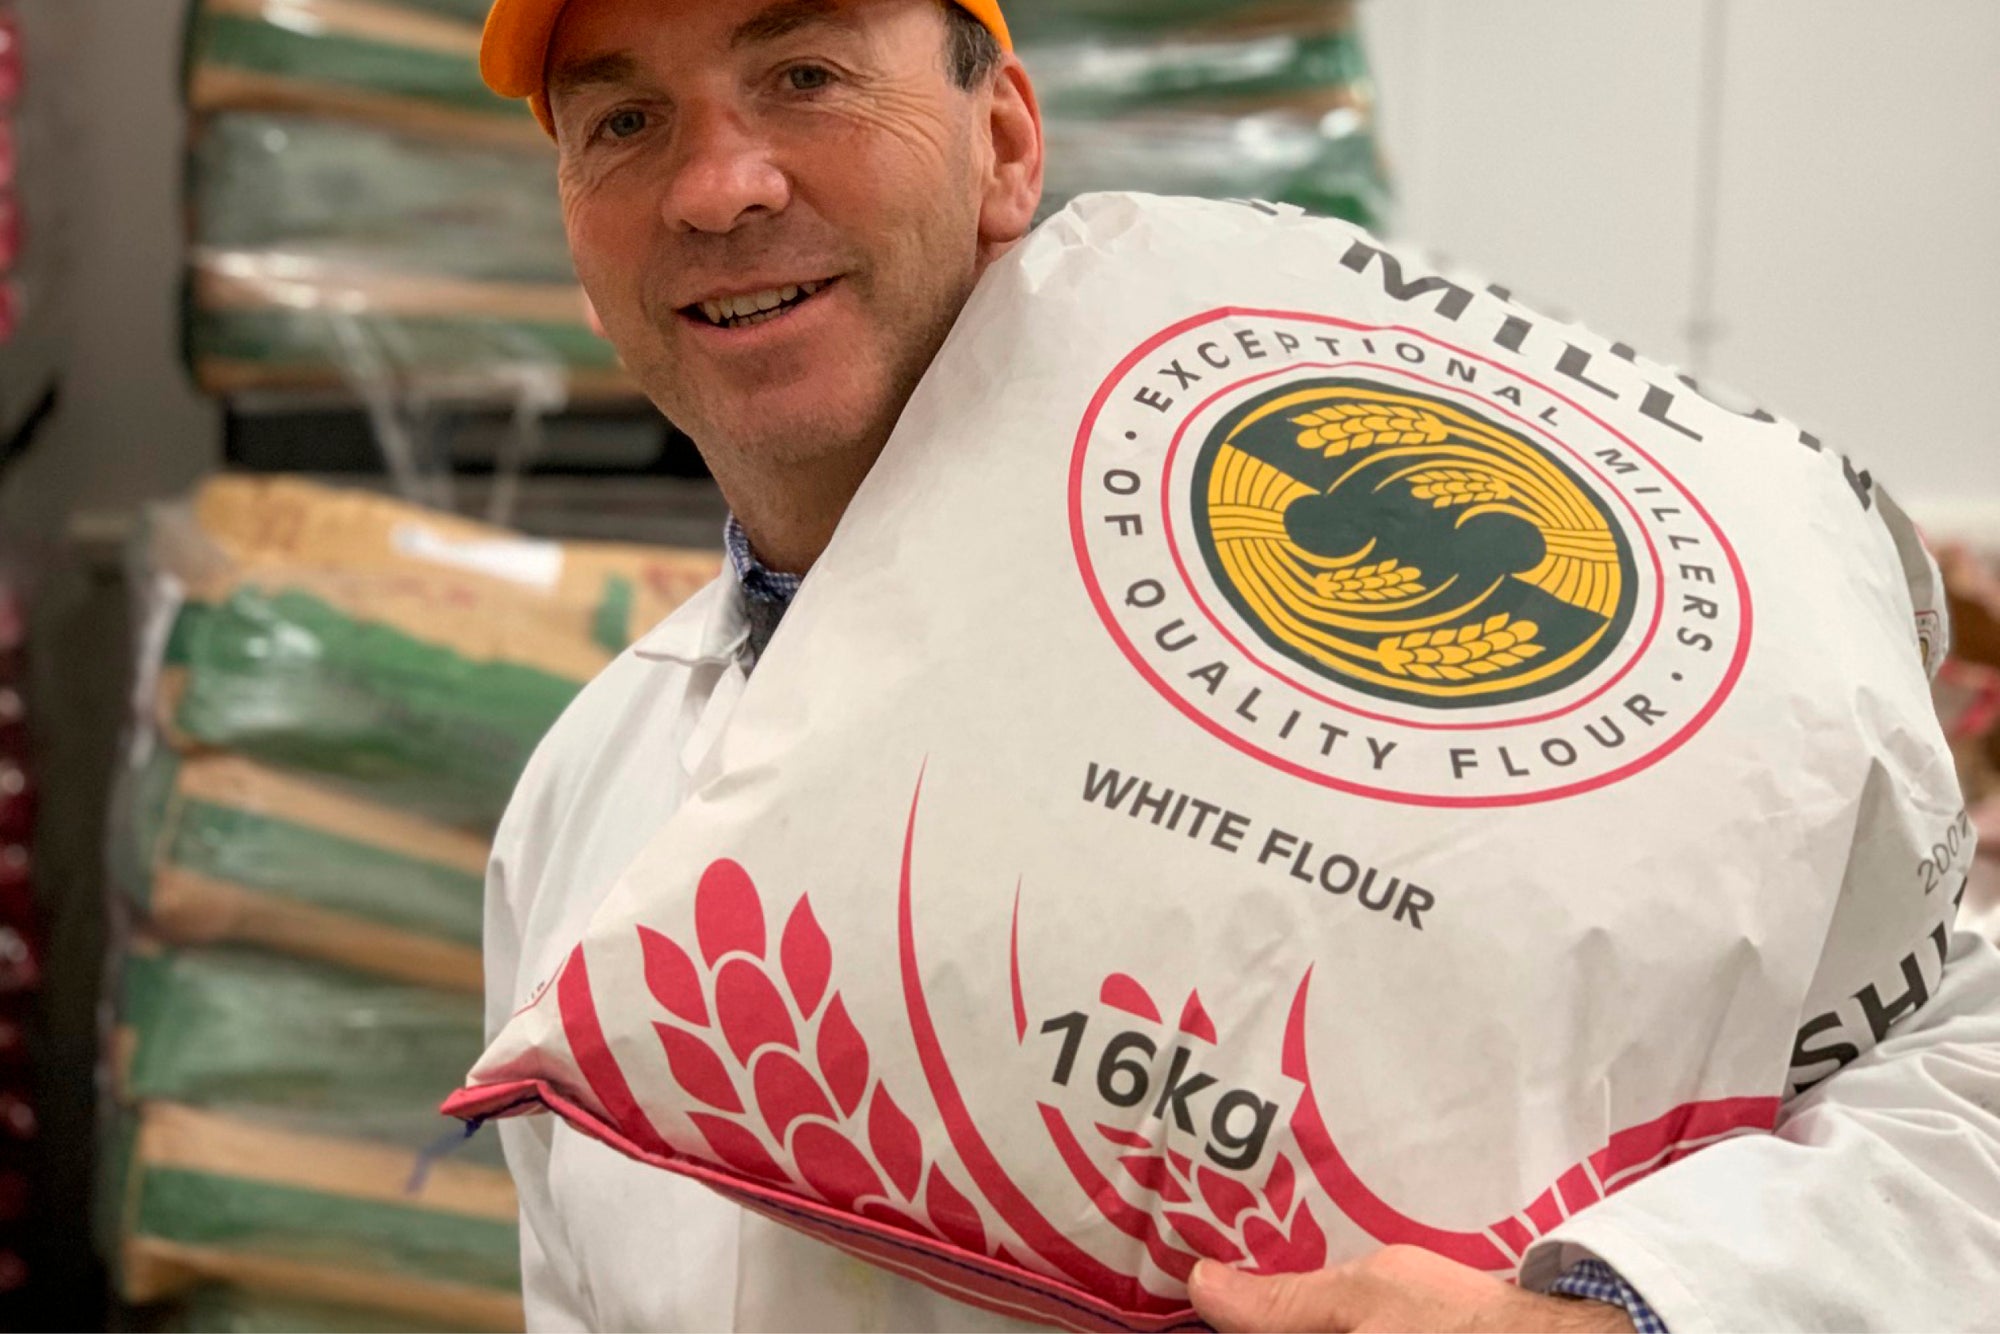 16kg white flour